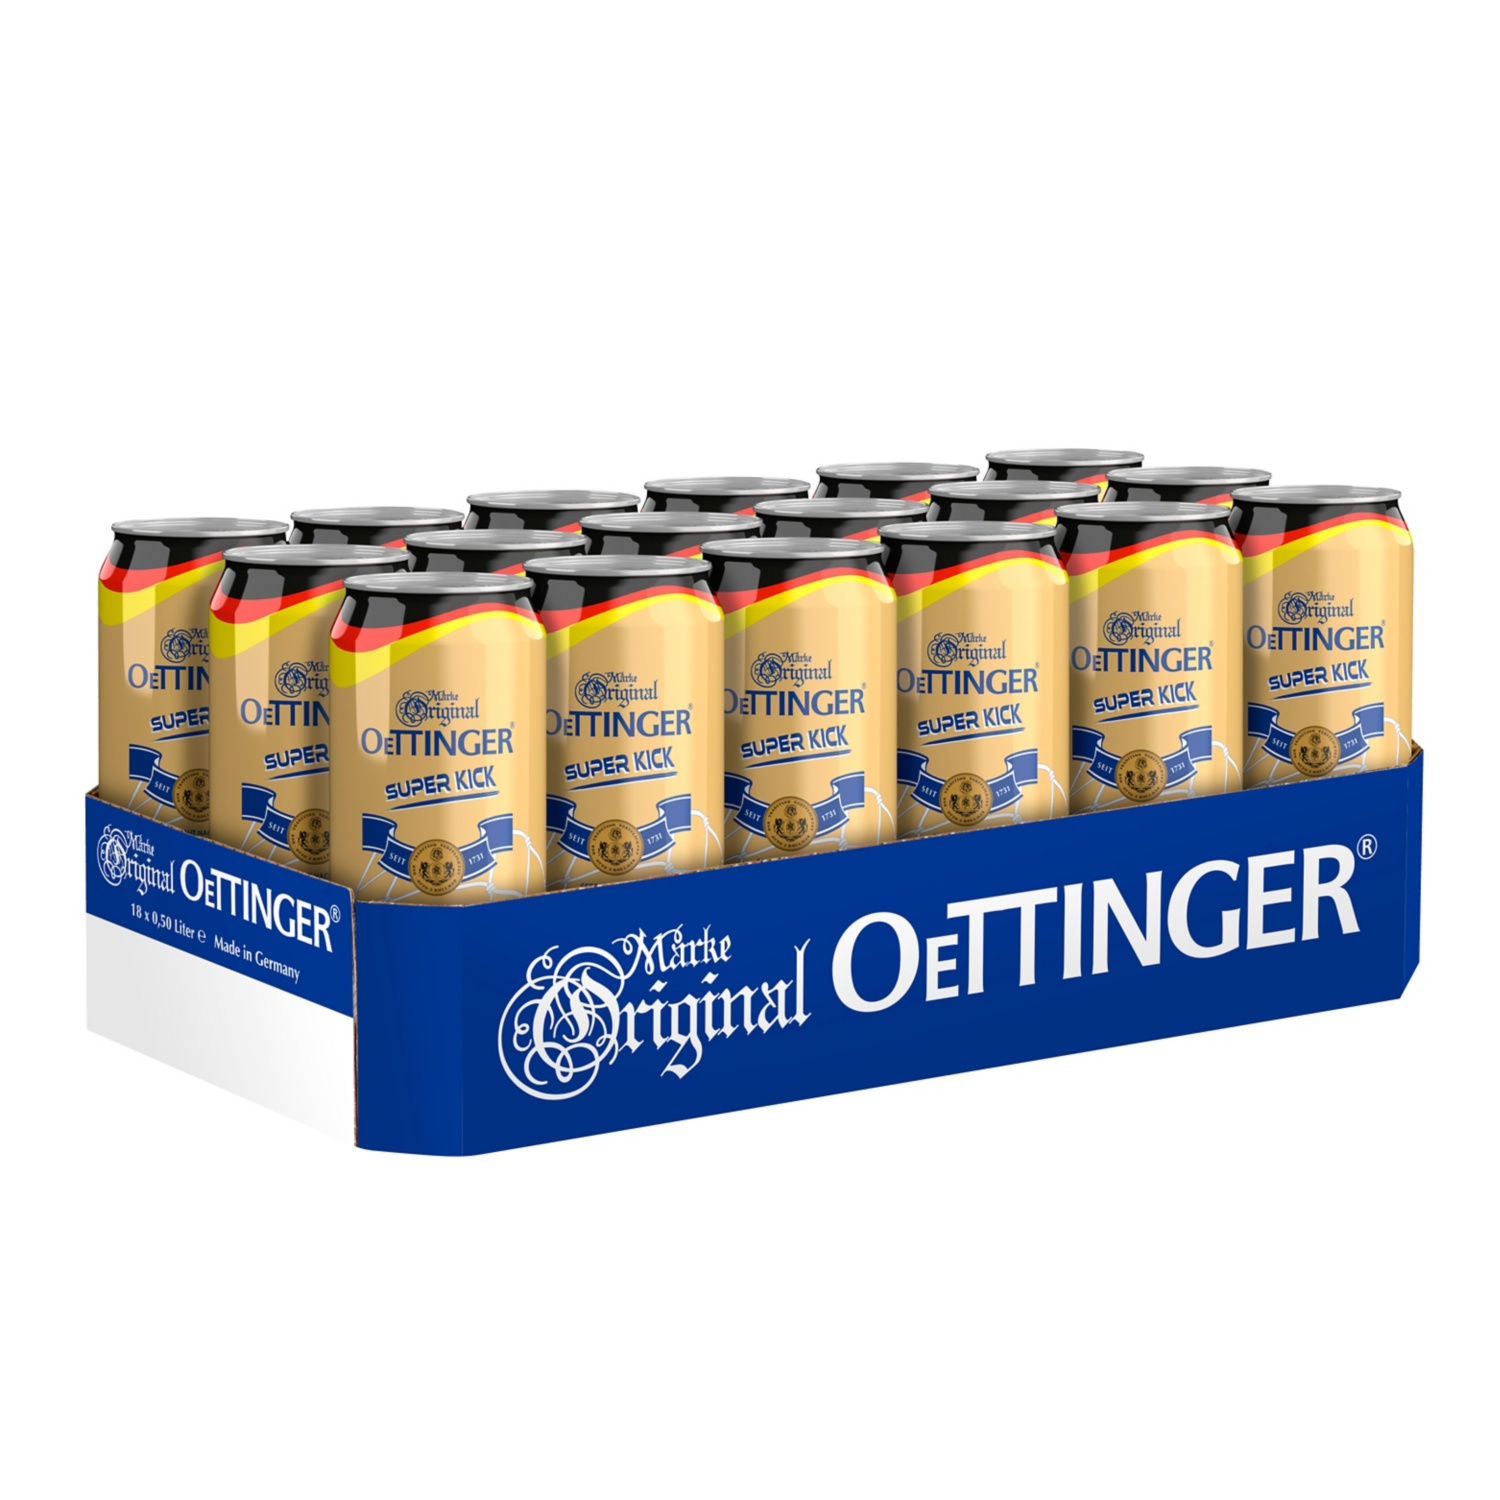 Oettinger Super Kick Bier 0,5 l